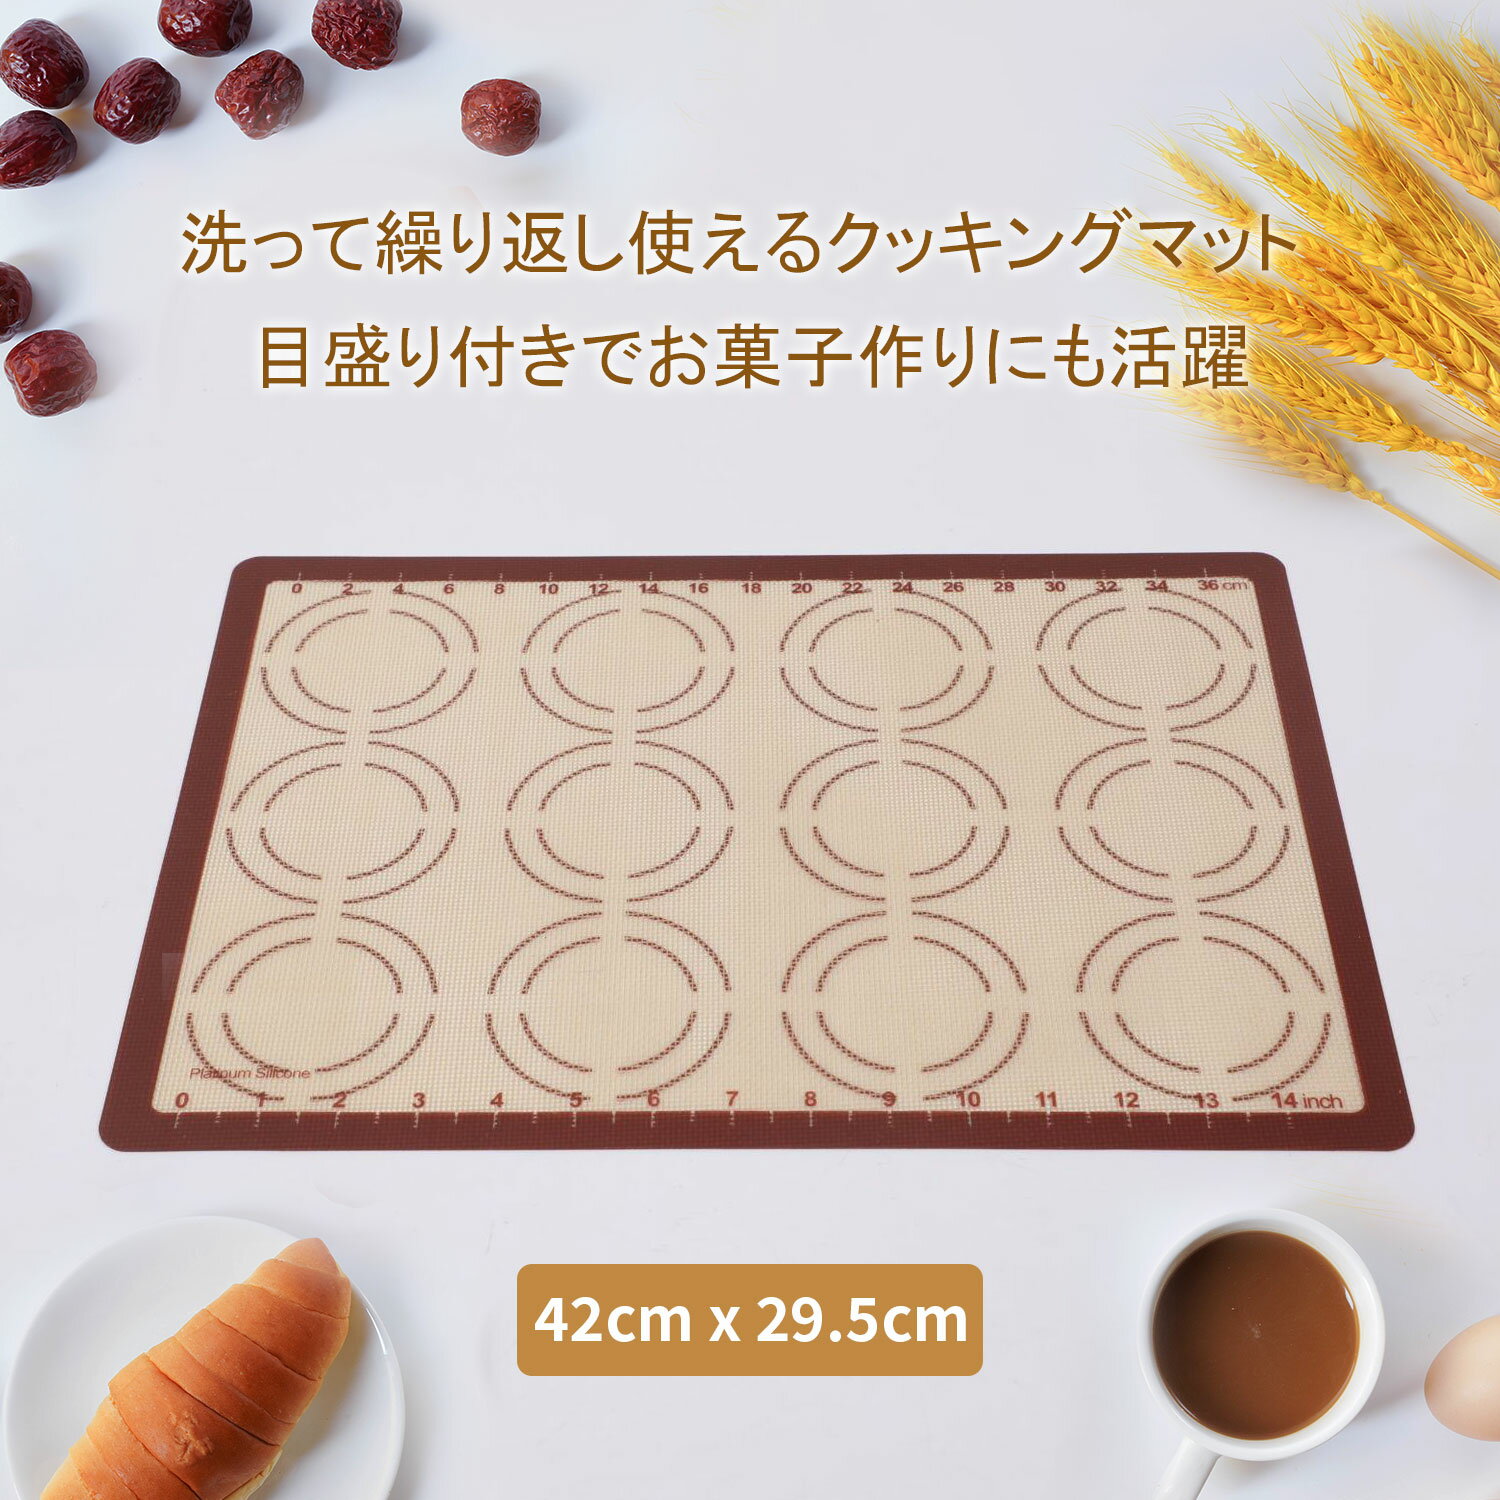 【週末限定SALE 】⇒1200円 ベーキングマット パンこねマット パン作り道具 42×29.5c ...